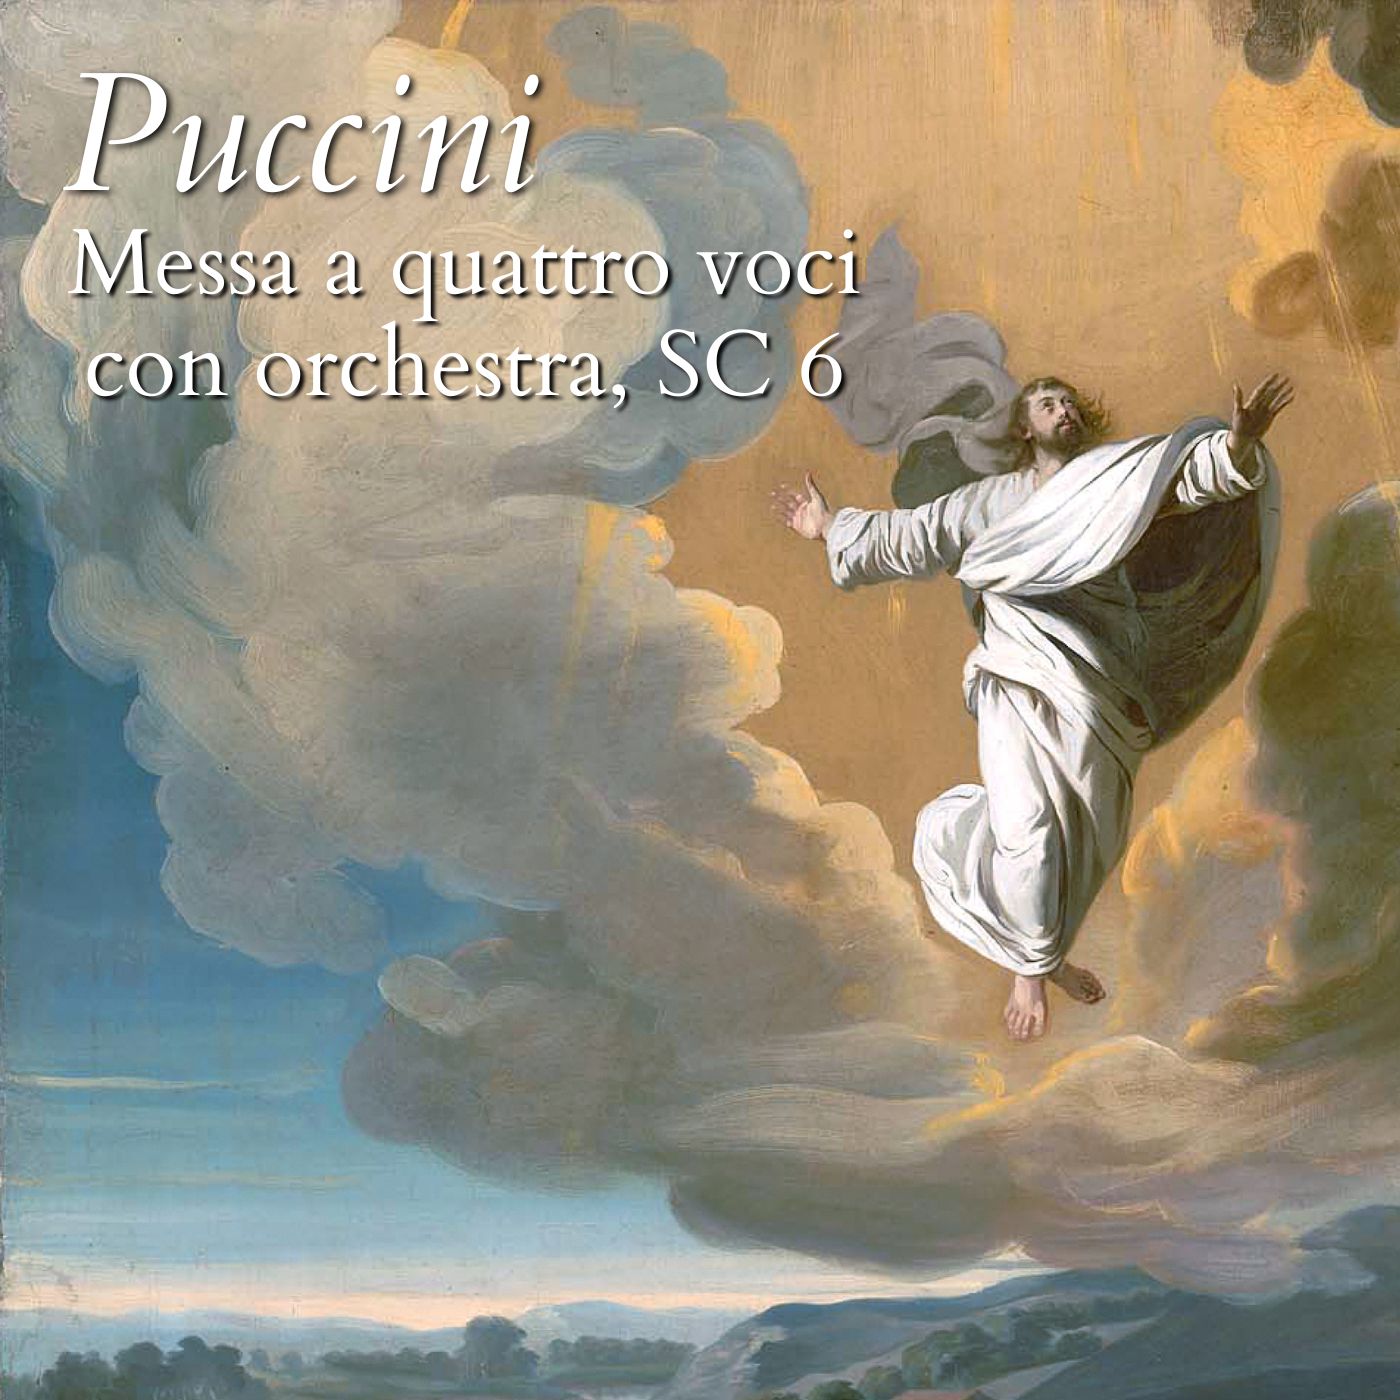 Puccini: Messa a quattro voci con orchestra, SC 6 (Live)